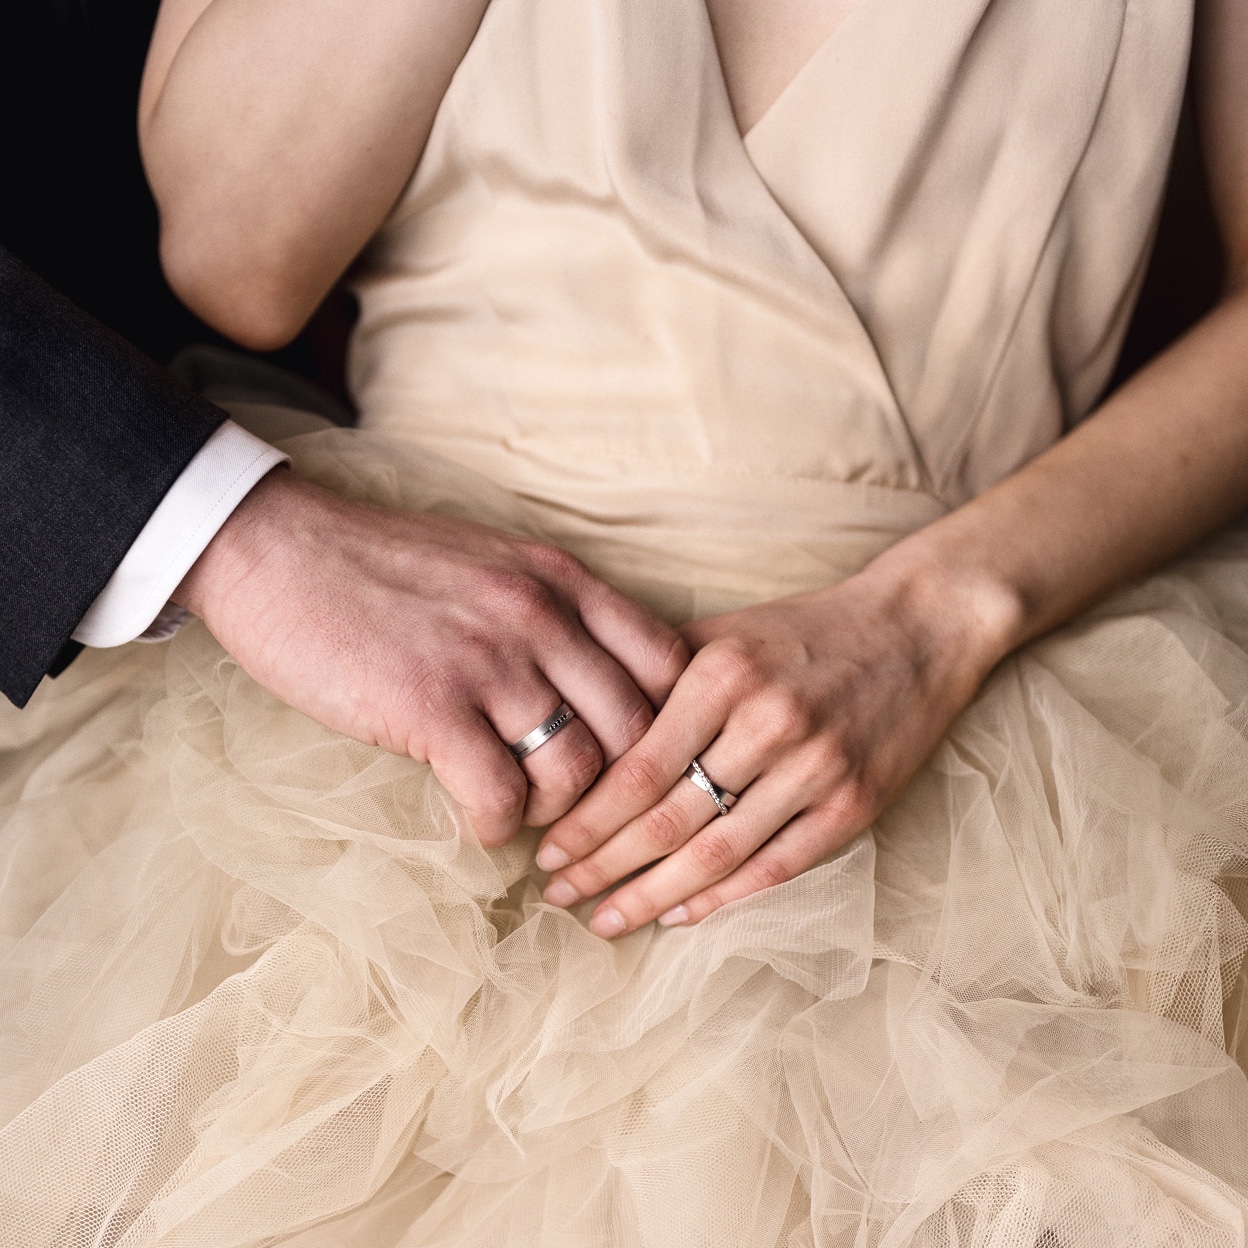 Obrączki ślubne — popularne materiały i mity na ich temat